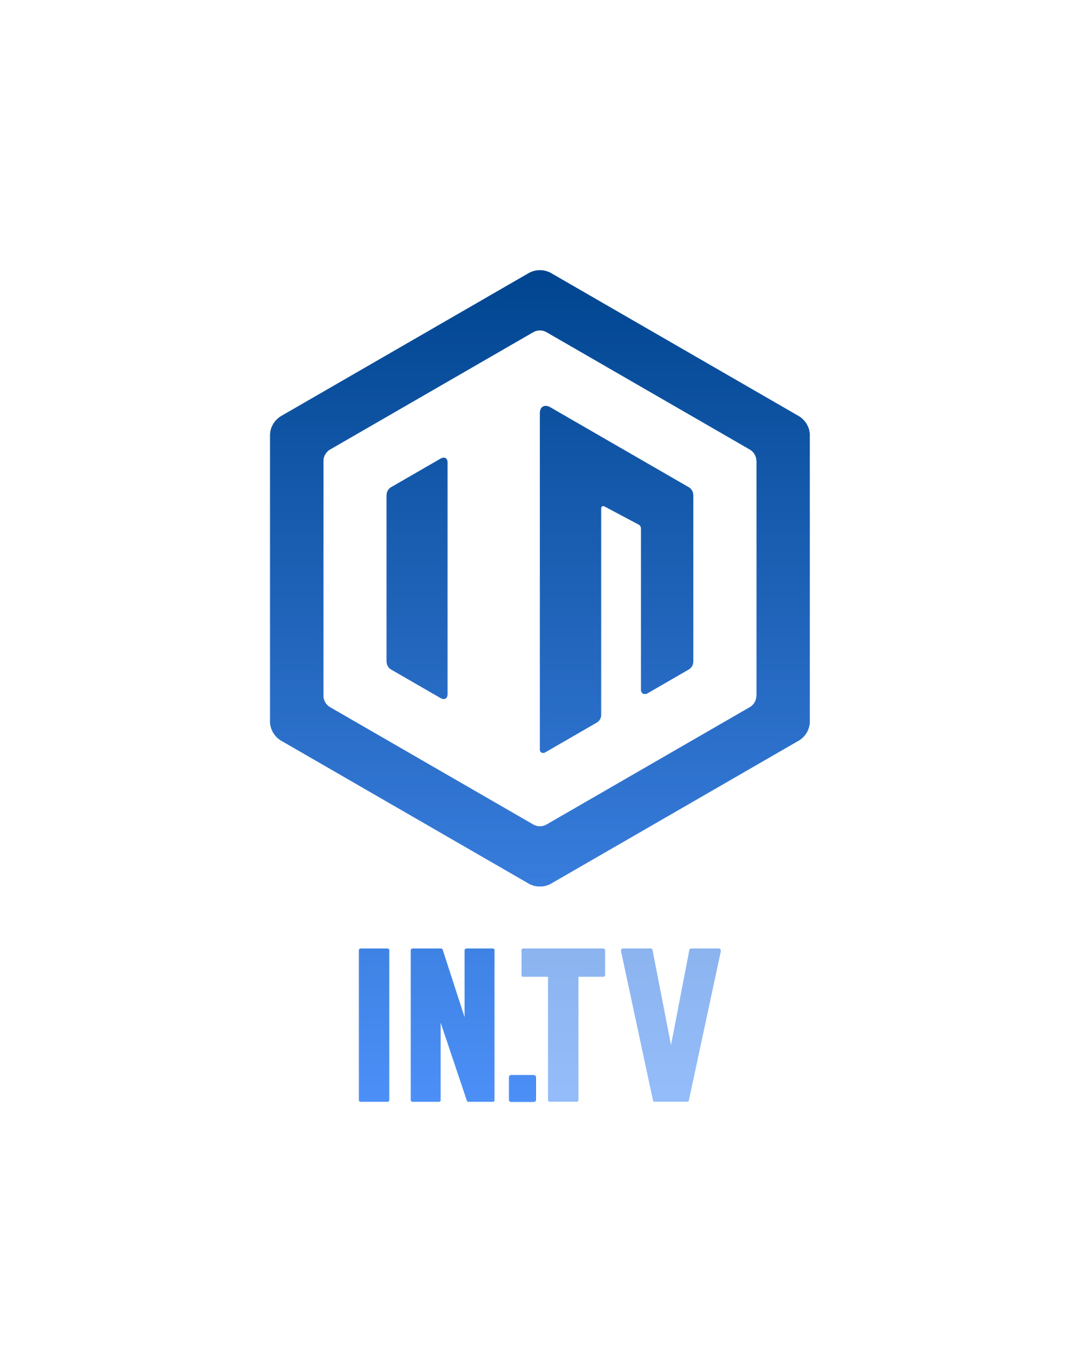 IN.TV Logo Assets